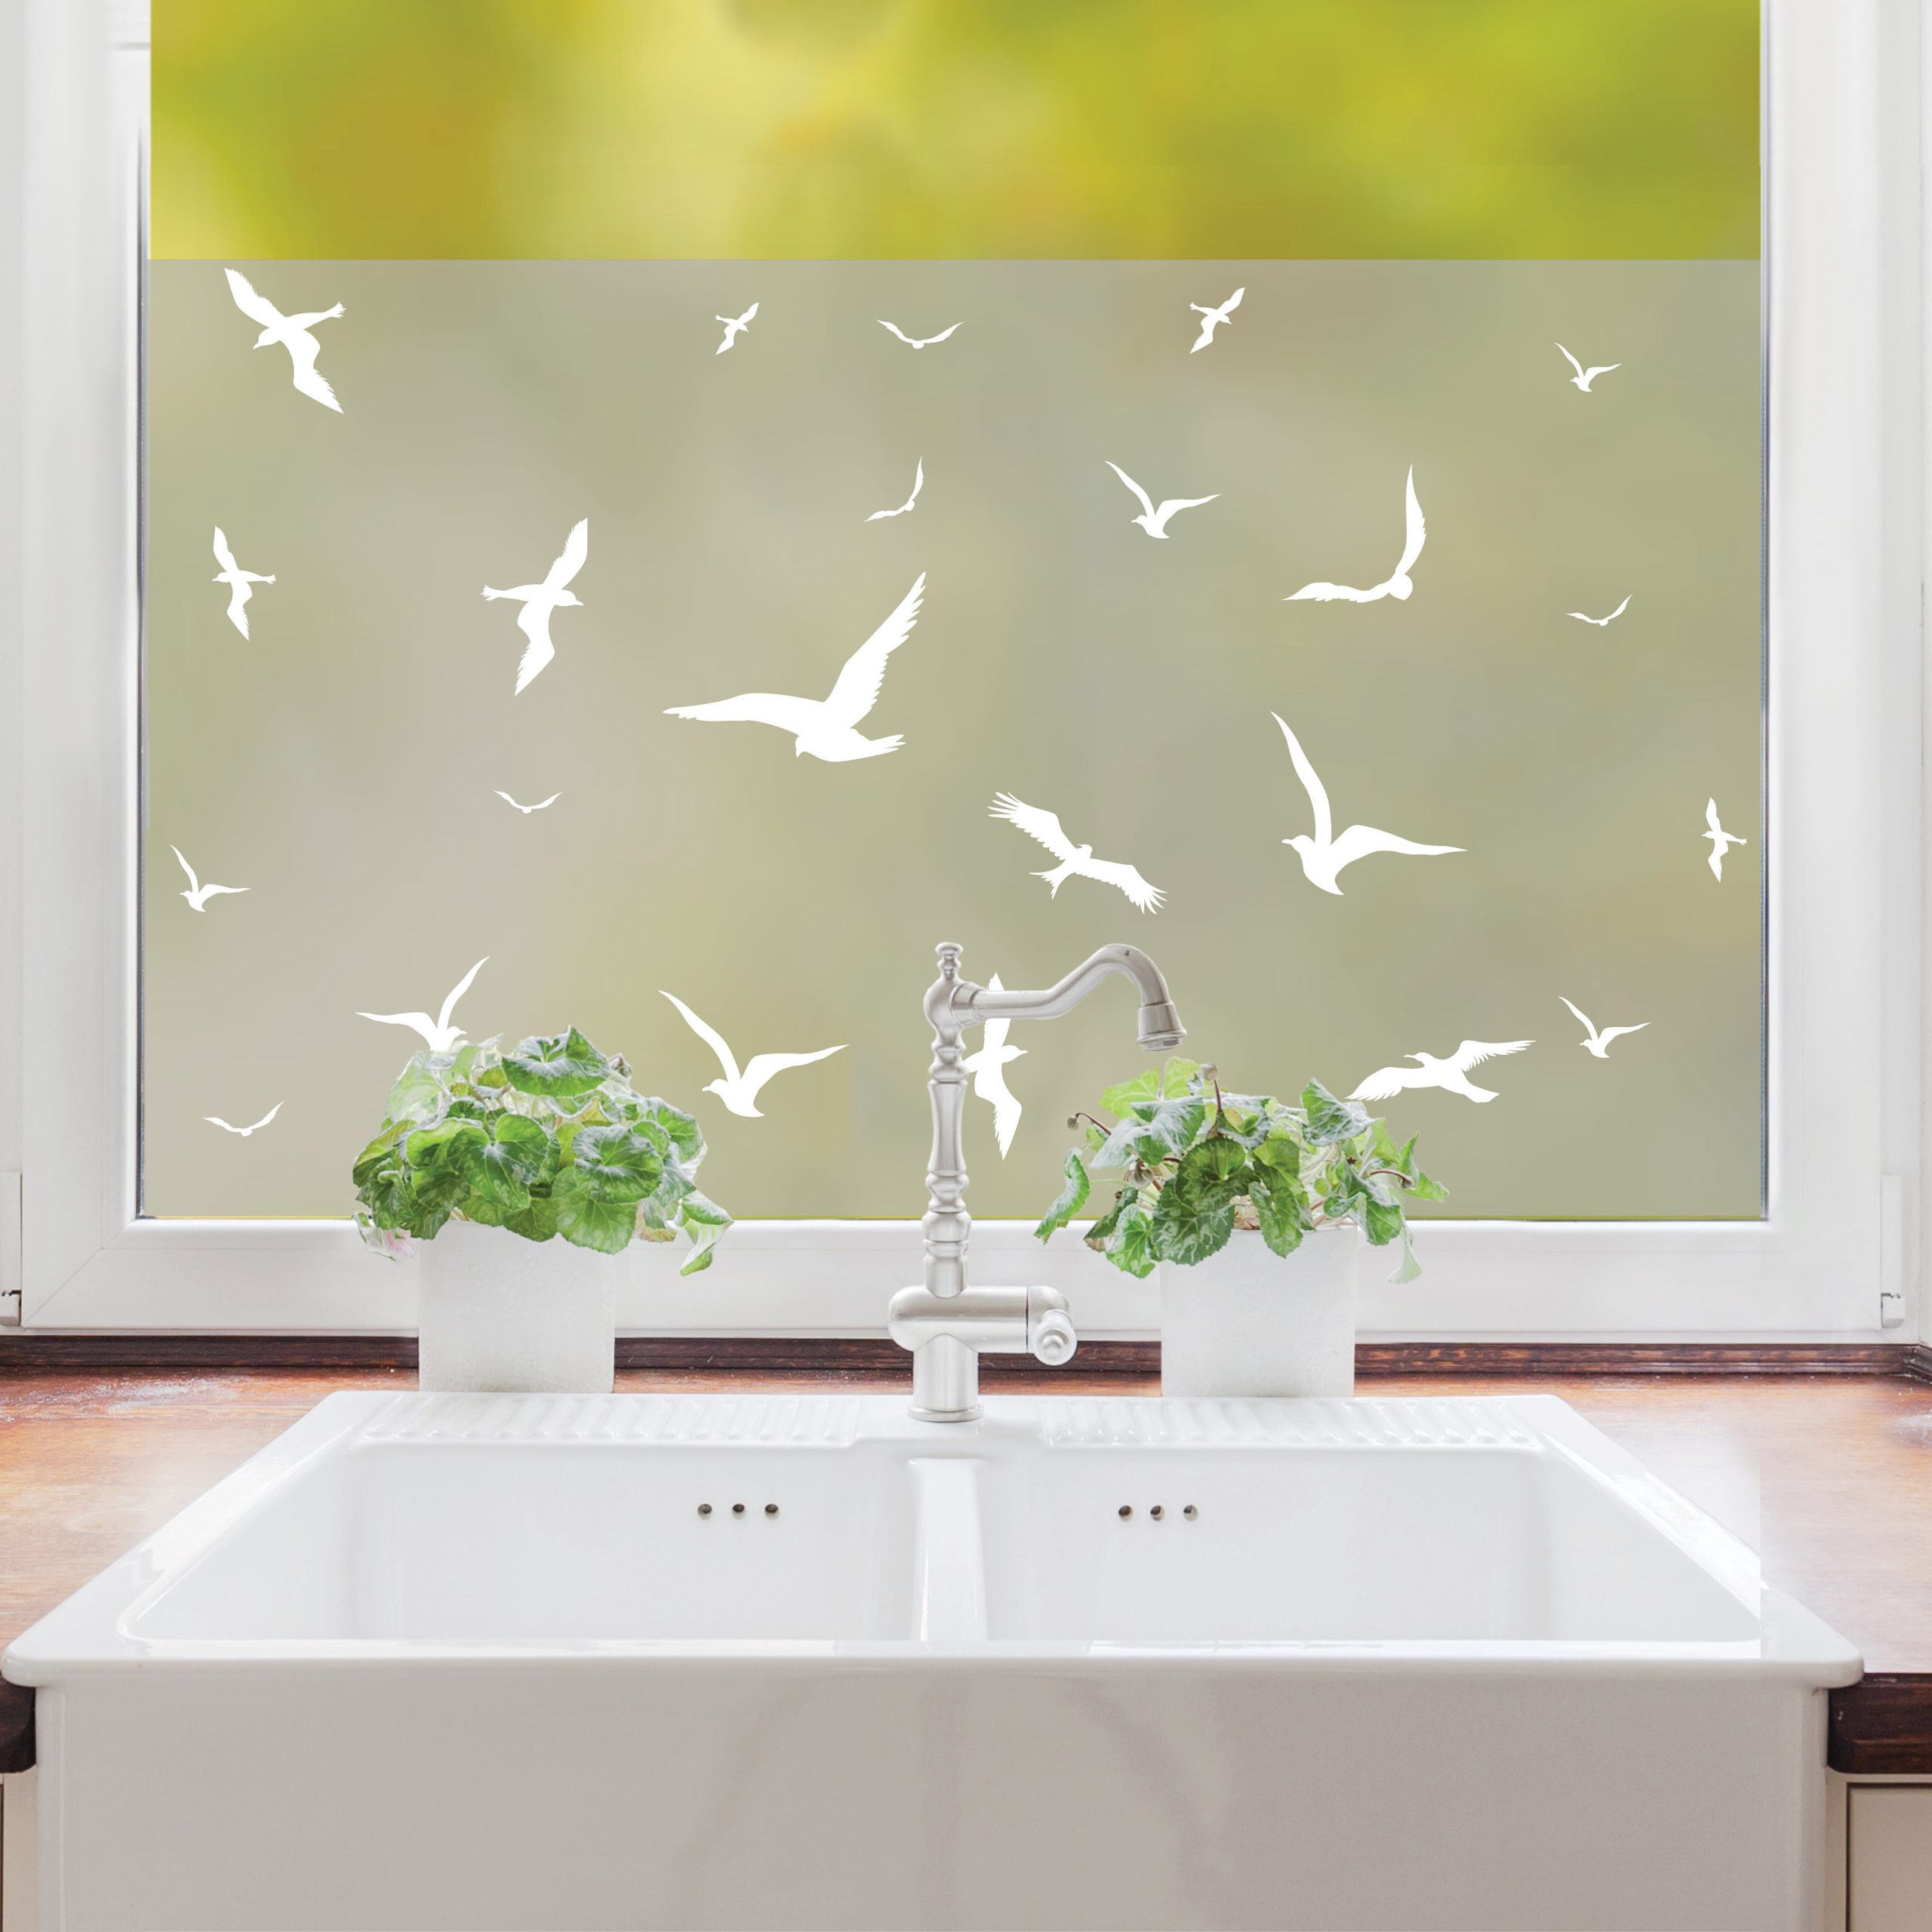 Sichtschutzfolie Wiederverwendbar fliegende Vögel Fensterfolie Fensterdeko Milchglasfolie Sichtschutz